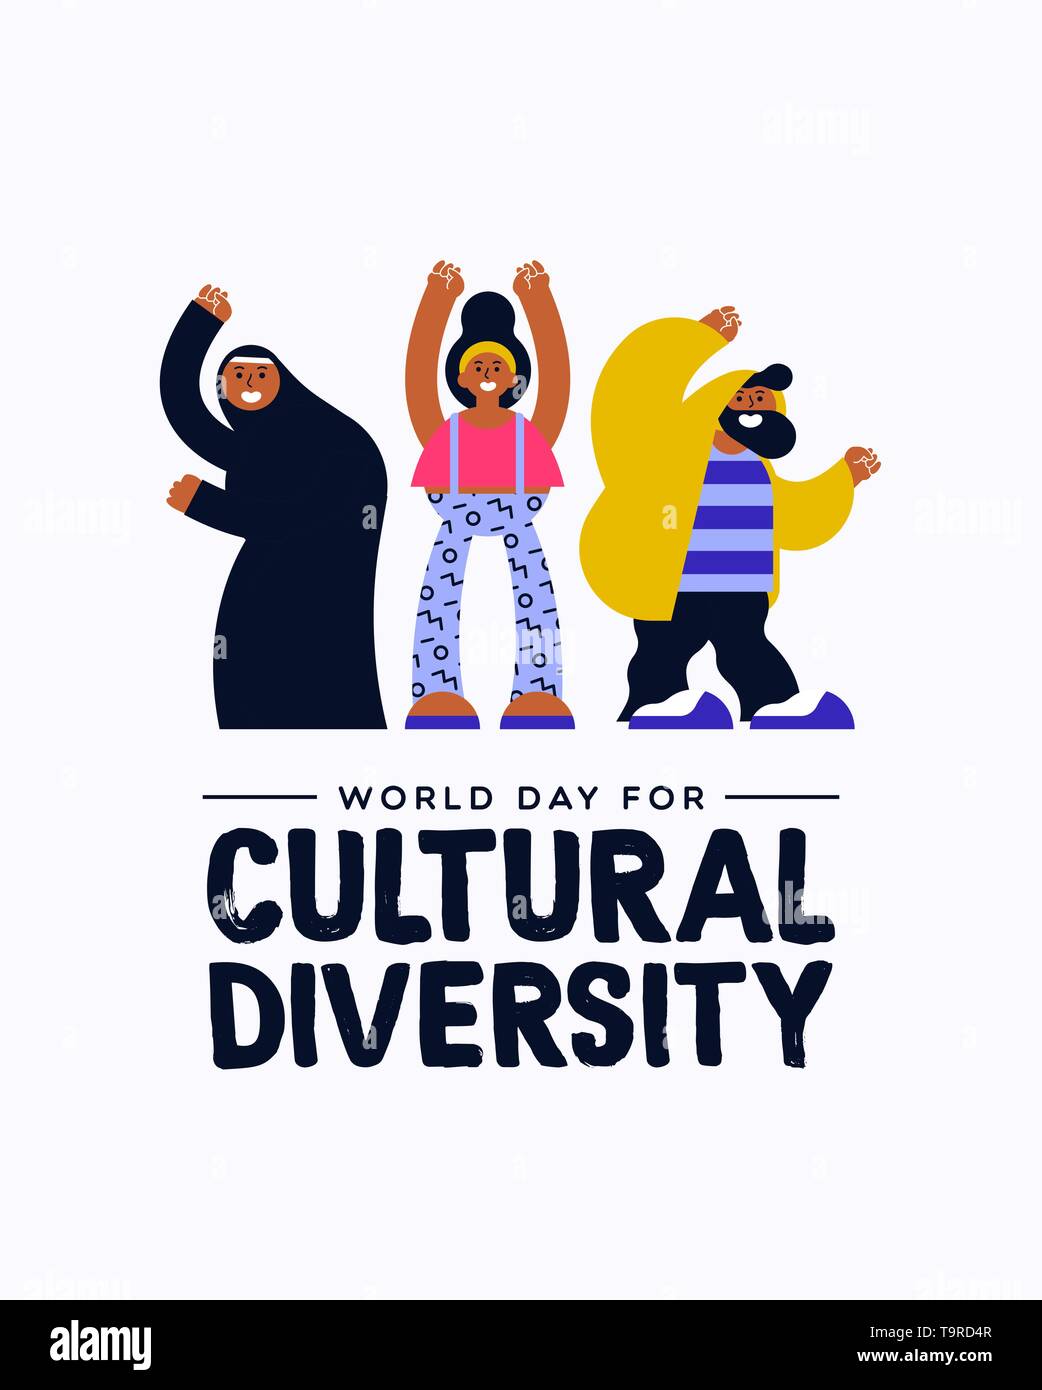 Kulturelle Vielfalt Tag Grußkarte Abbildung. Glücklicher Freund Gruppe in einem farbenfrohen, modernen Stil mit einer muslimischen Frau für vielfältige Gemeinschaft Konzept. Stock Vektor